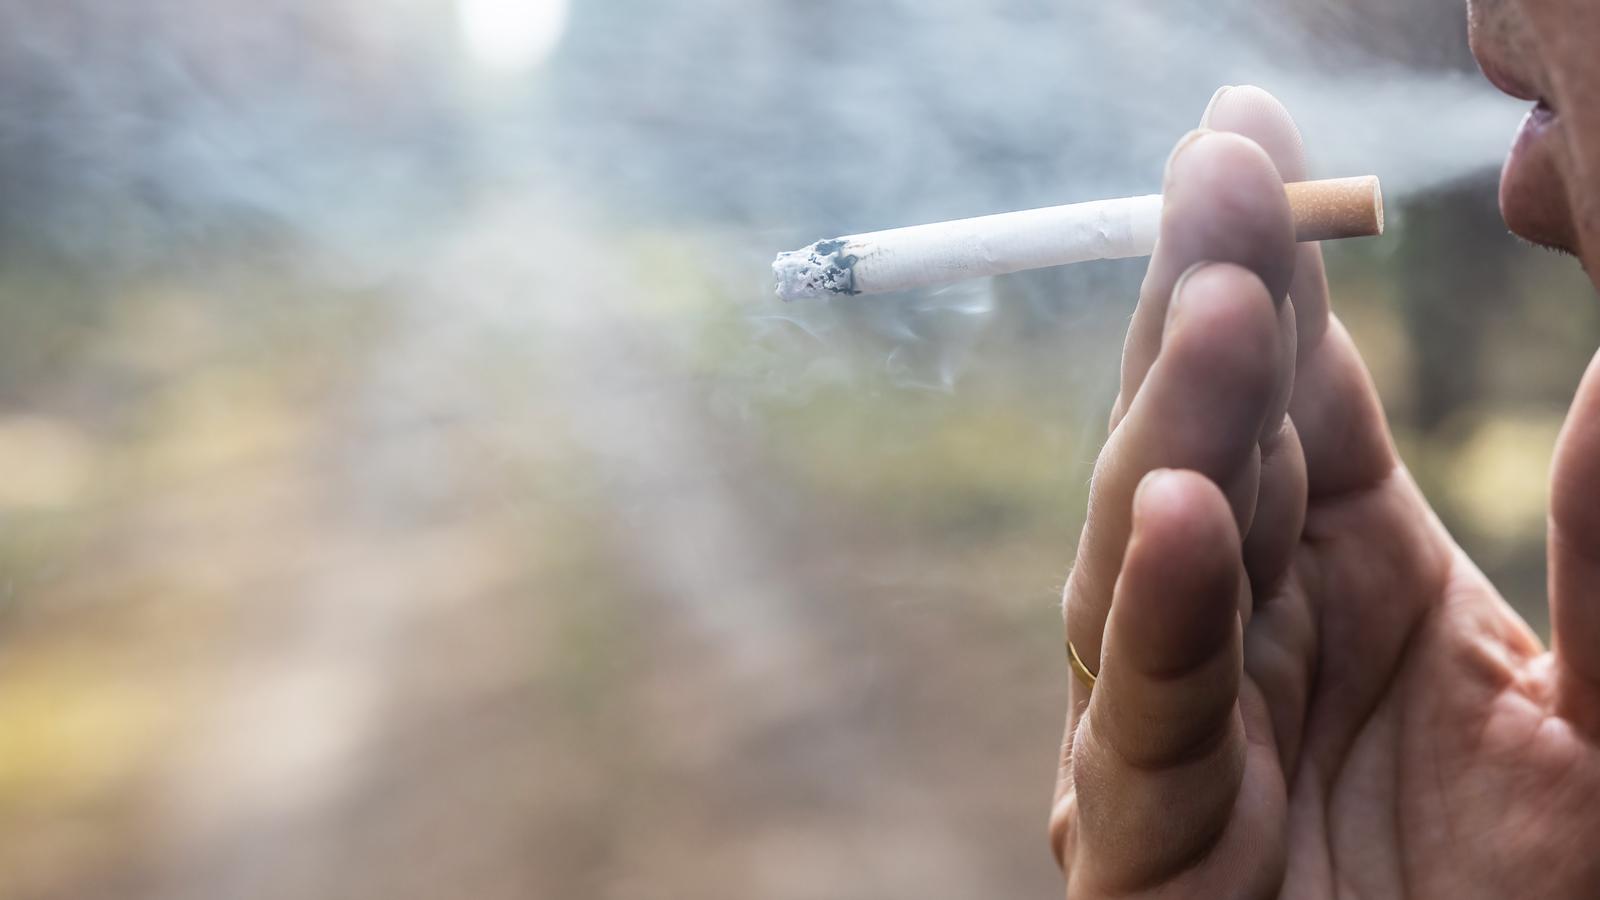 De nombreux locataires sont forcés de subir la fumée secondaire de leurs voisins fumeurs